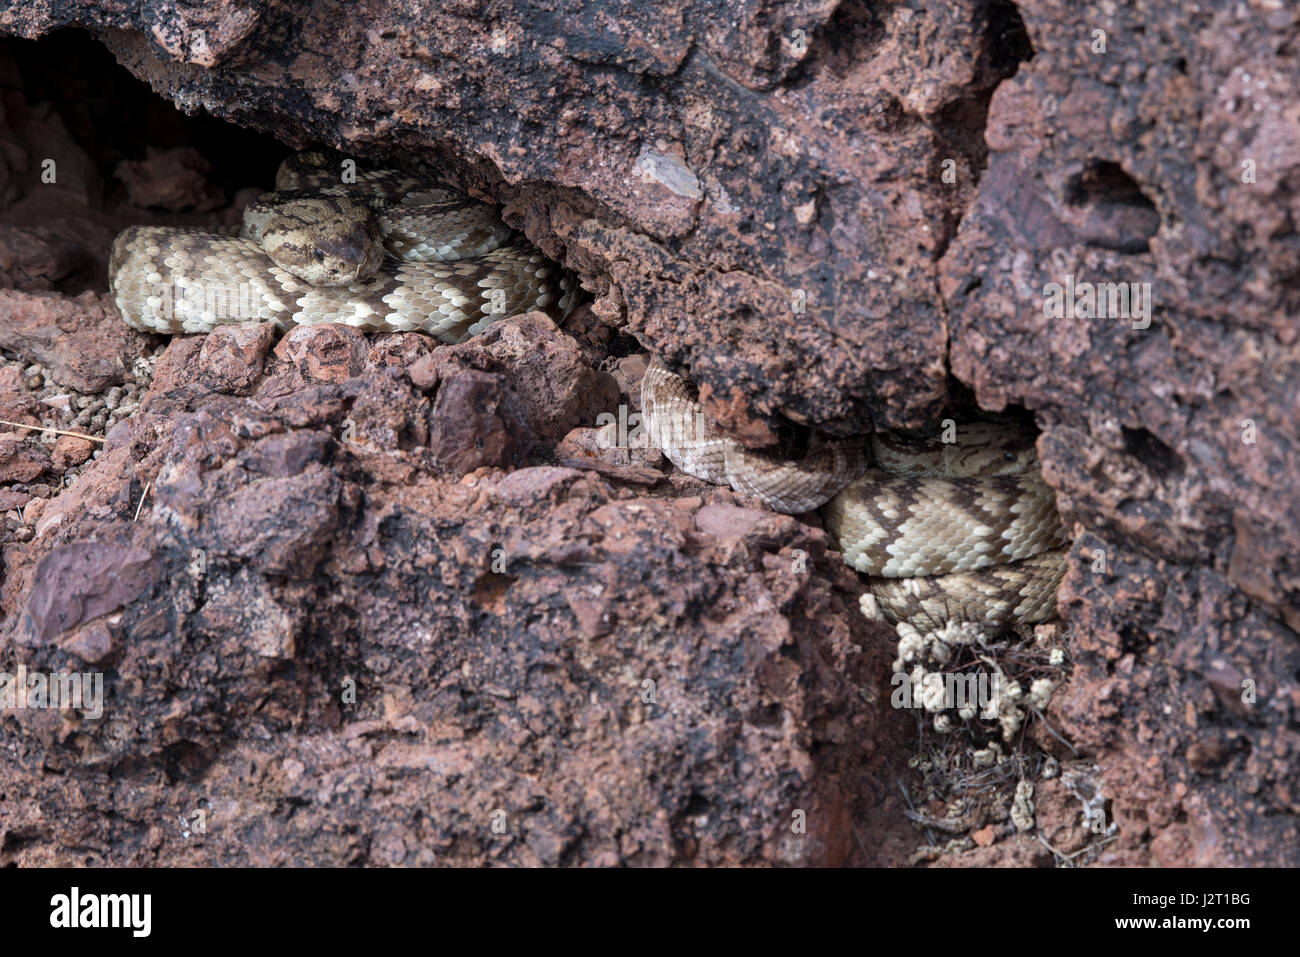 Negro Oriental colas (Crotalus ornatus) y Western Diamond, respaldados (Crotalus atrox), Cascabel tendido en una cueva en el centro de Nuevo México, EE.UU.. Foto de stock